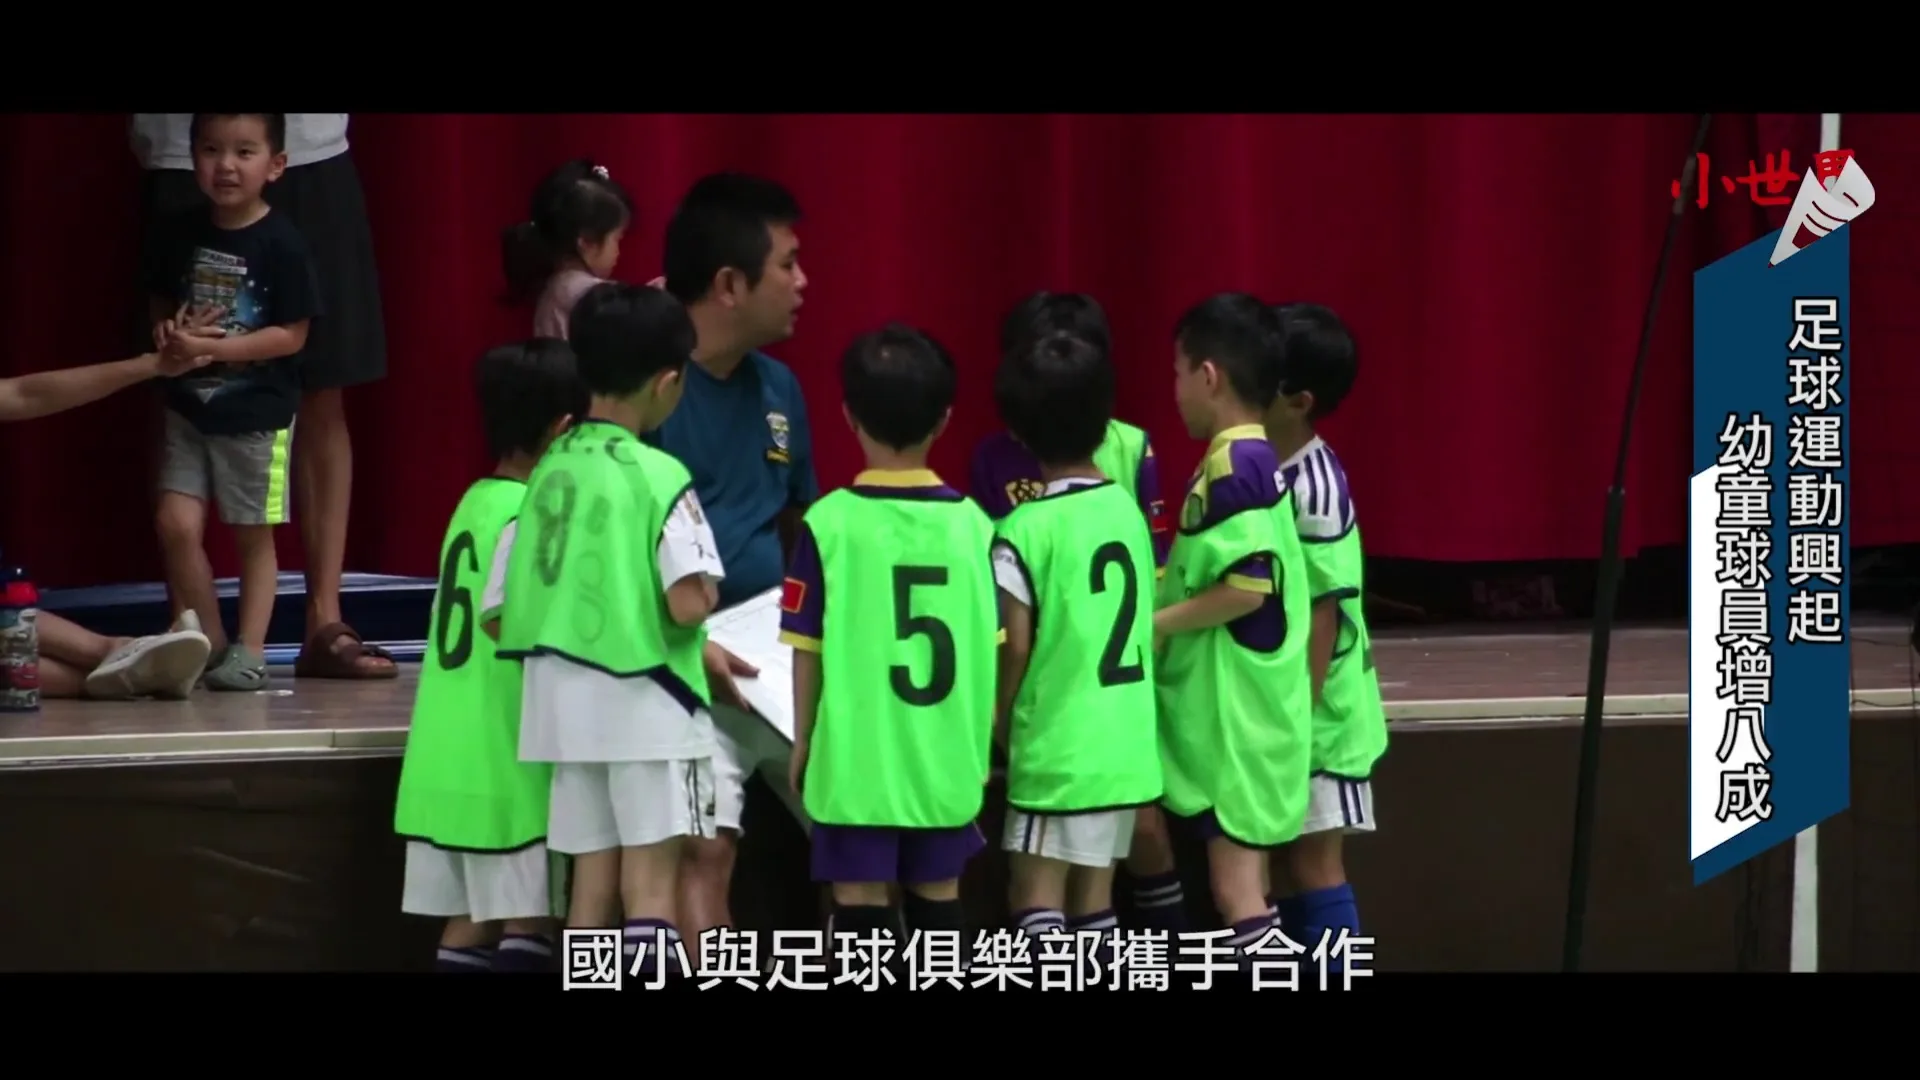 足球運動興起 幼童球員增八成